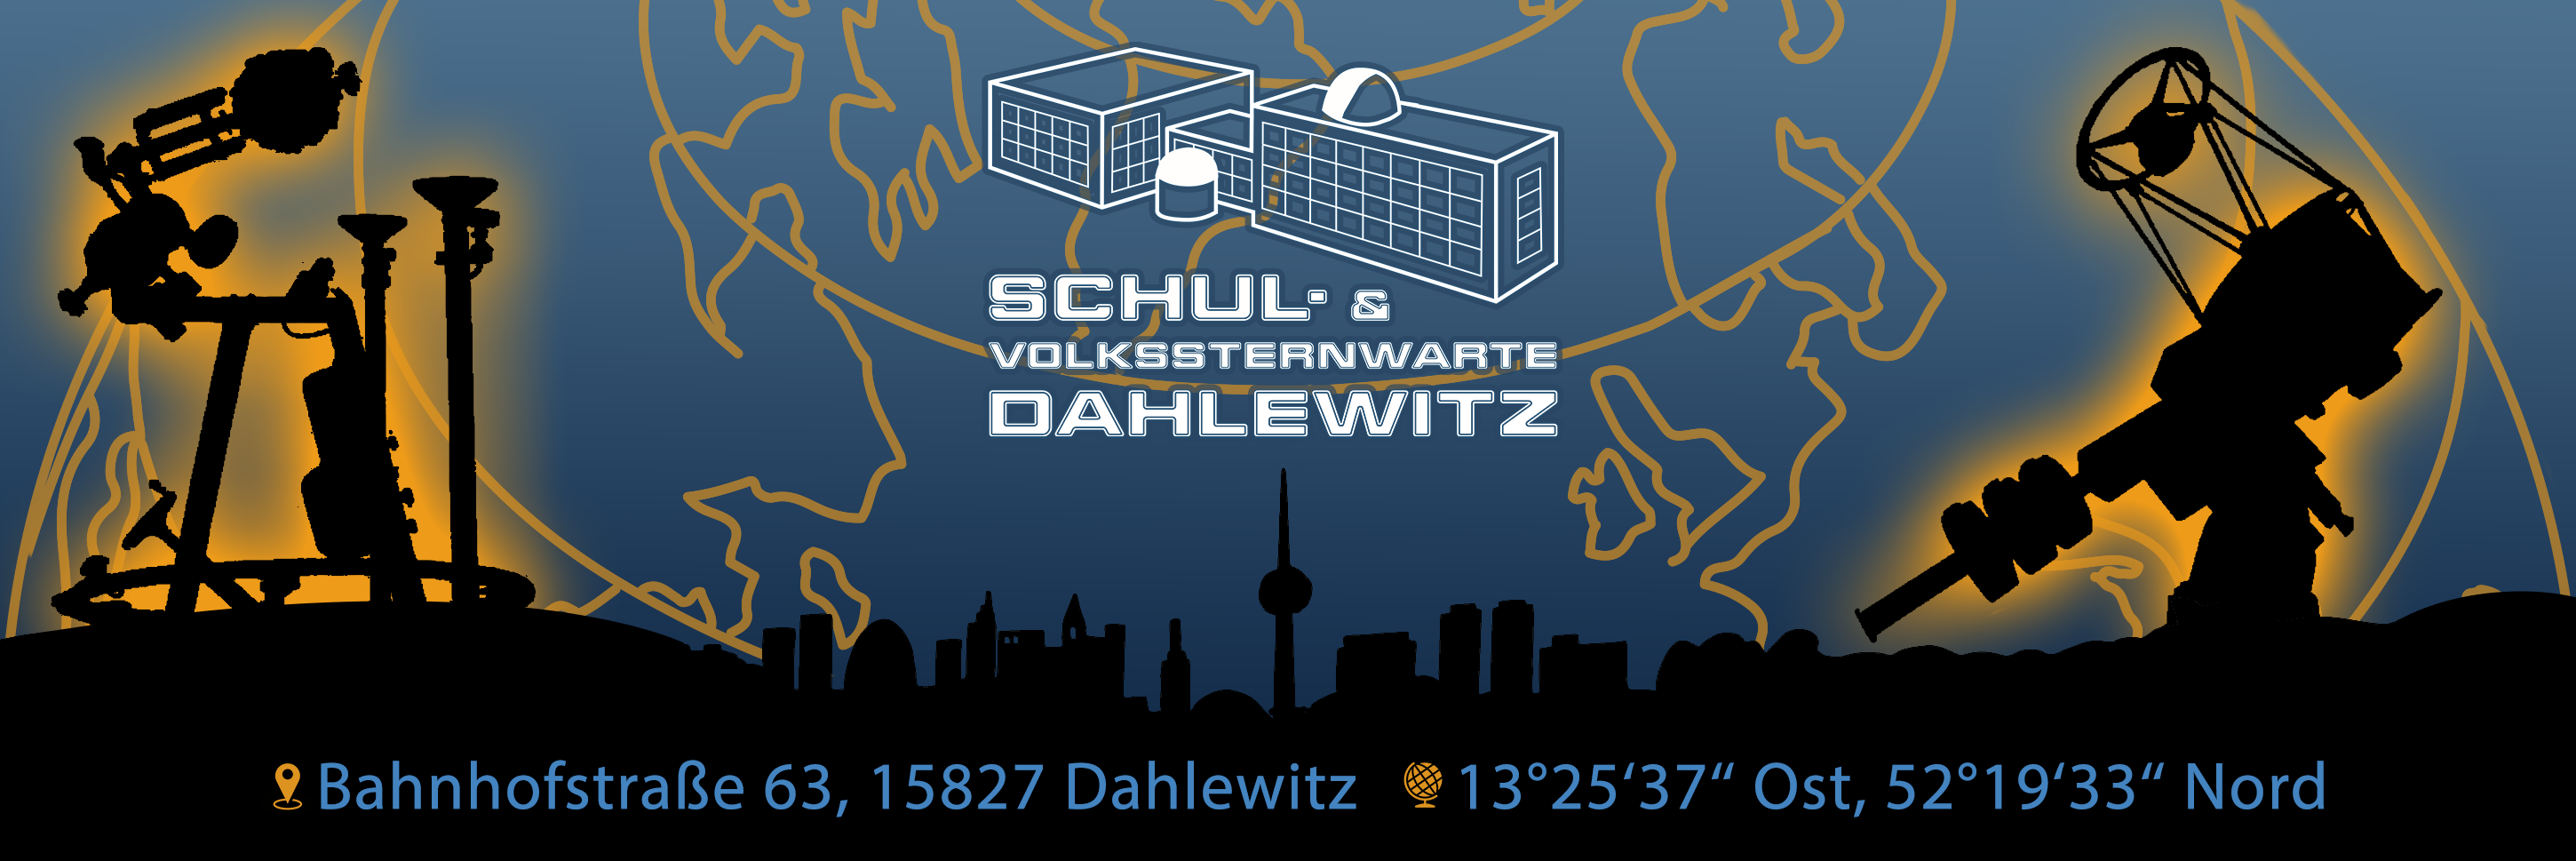 Willkommen in der Sternwarte Dahlewitz